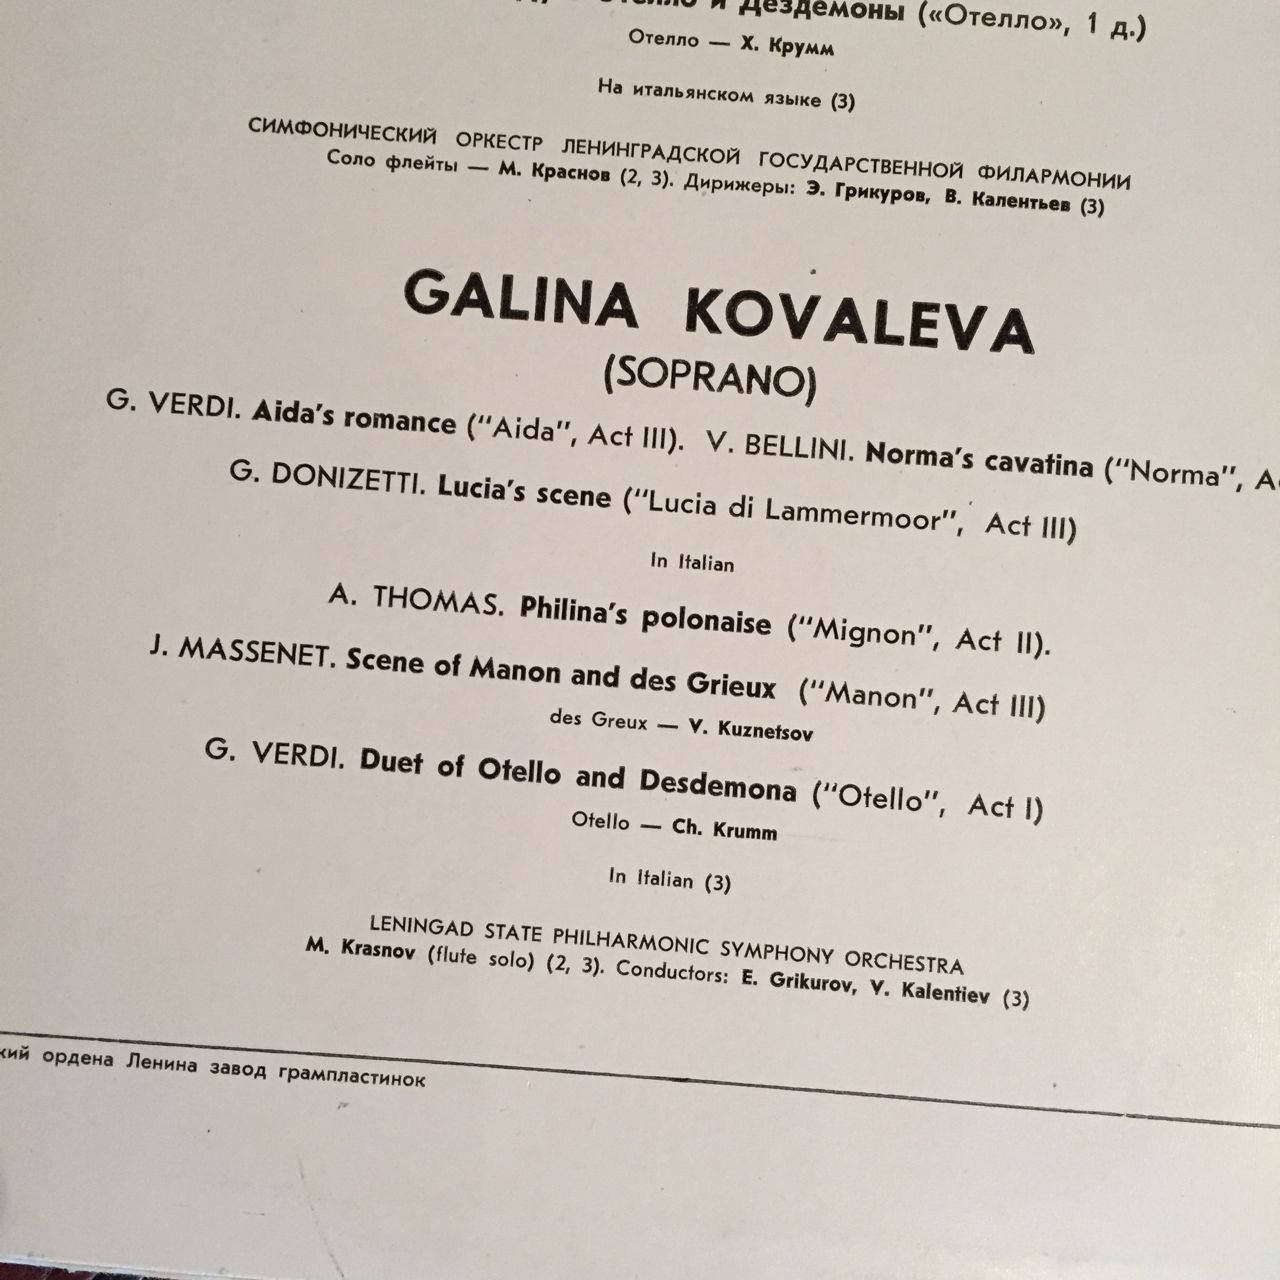 Г. КОВАЛЕВА, сопрано. Арии и сцены из опер